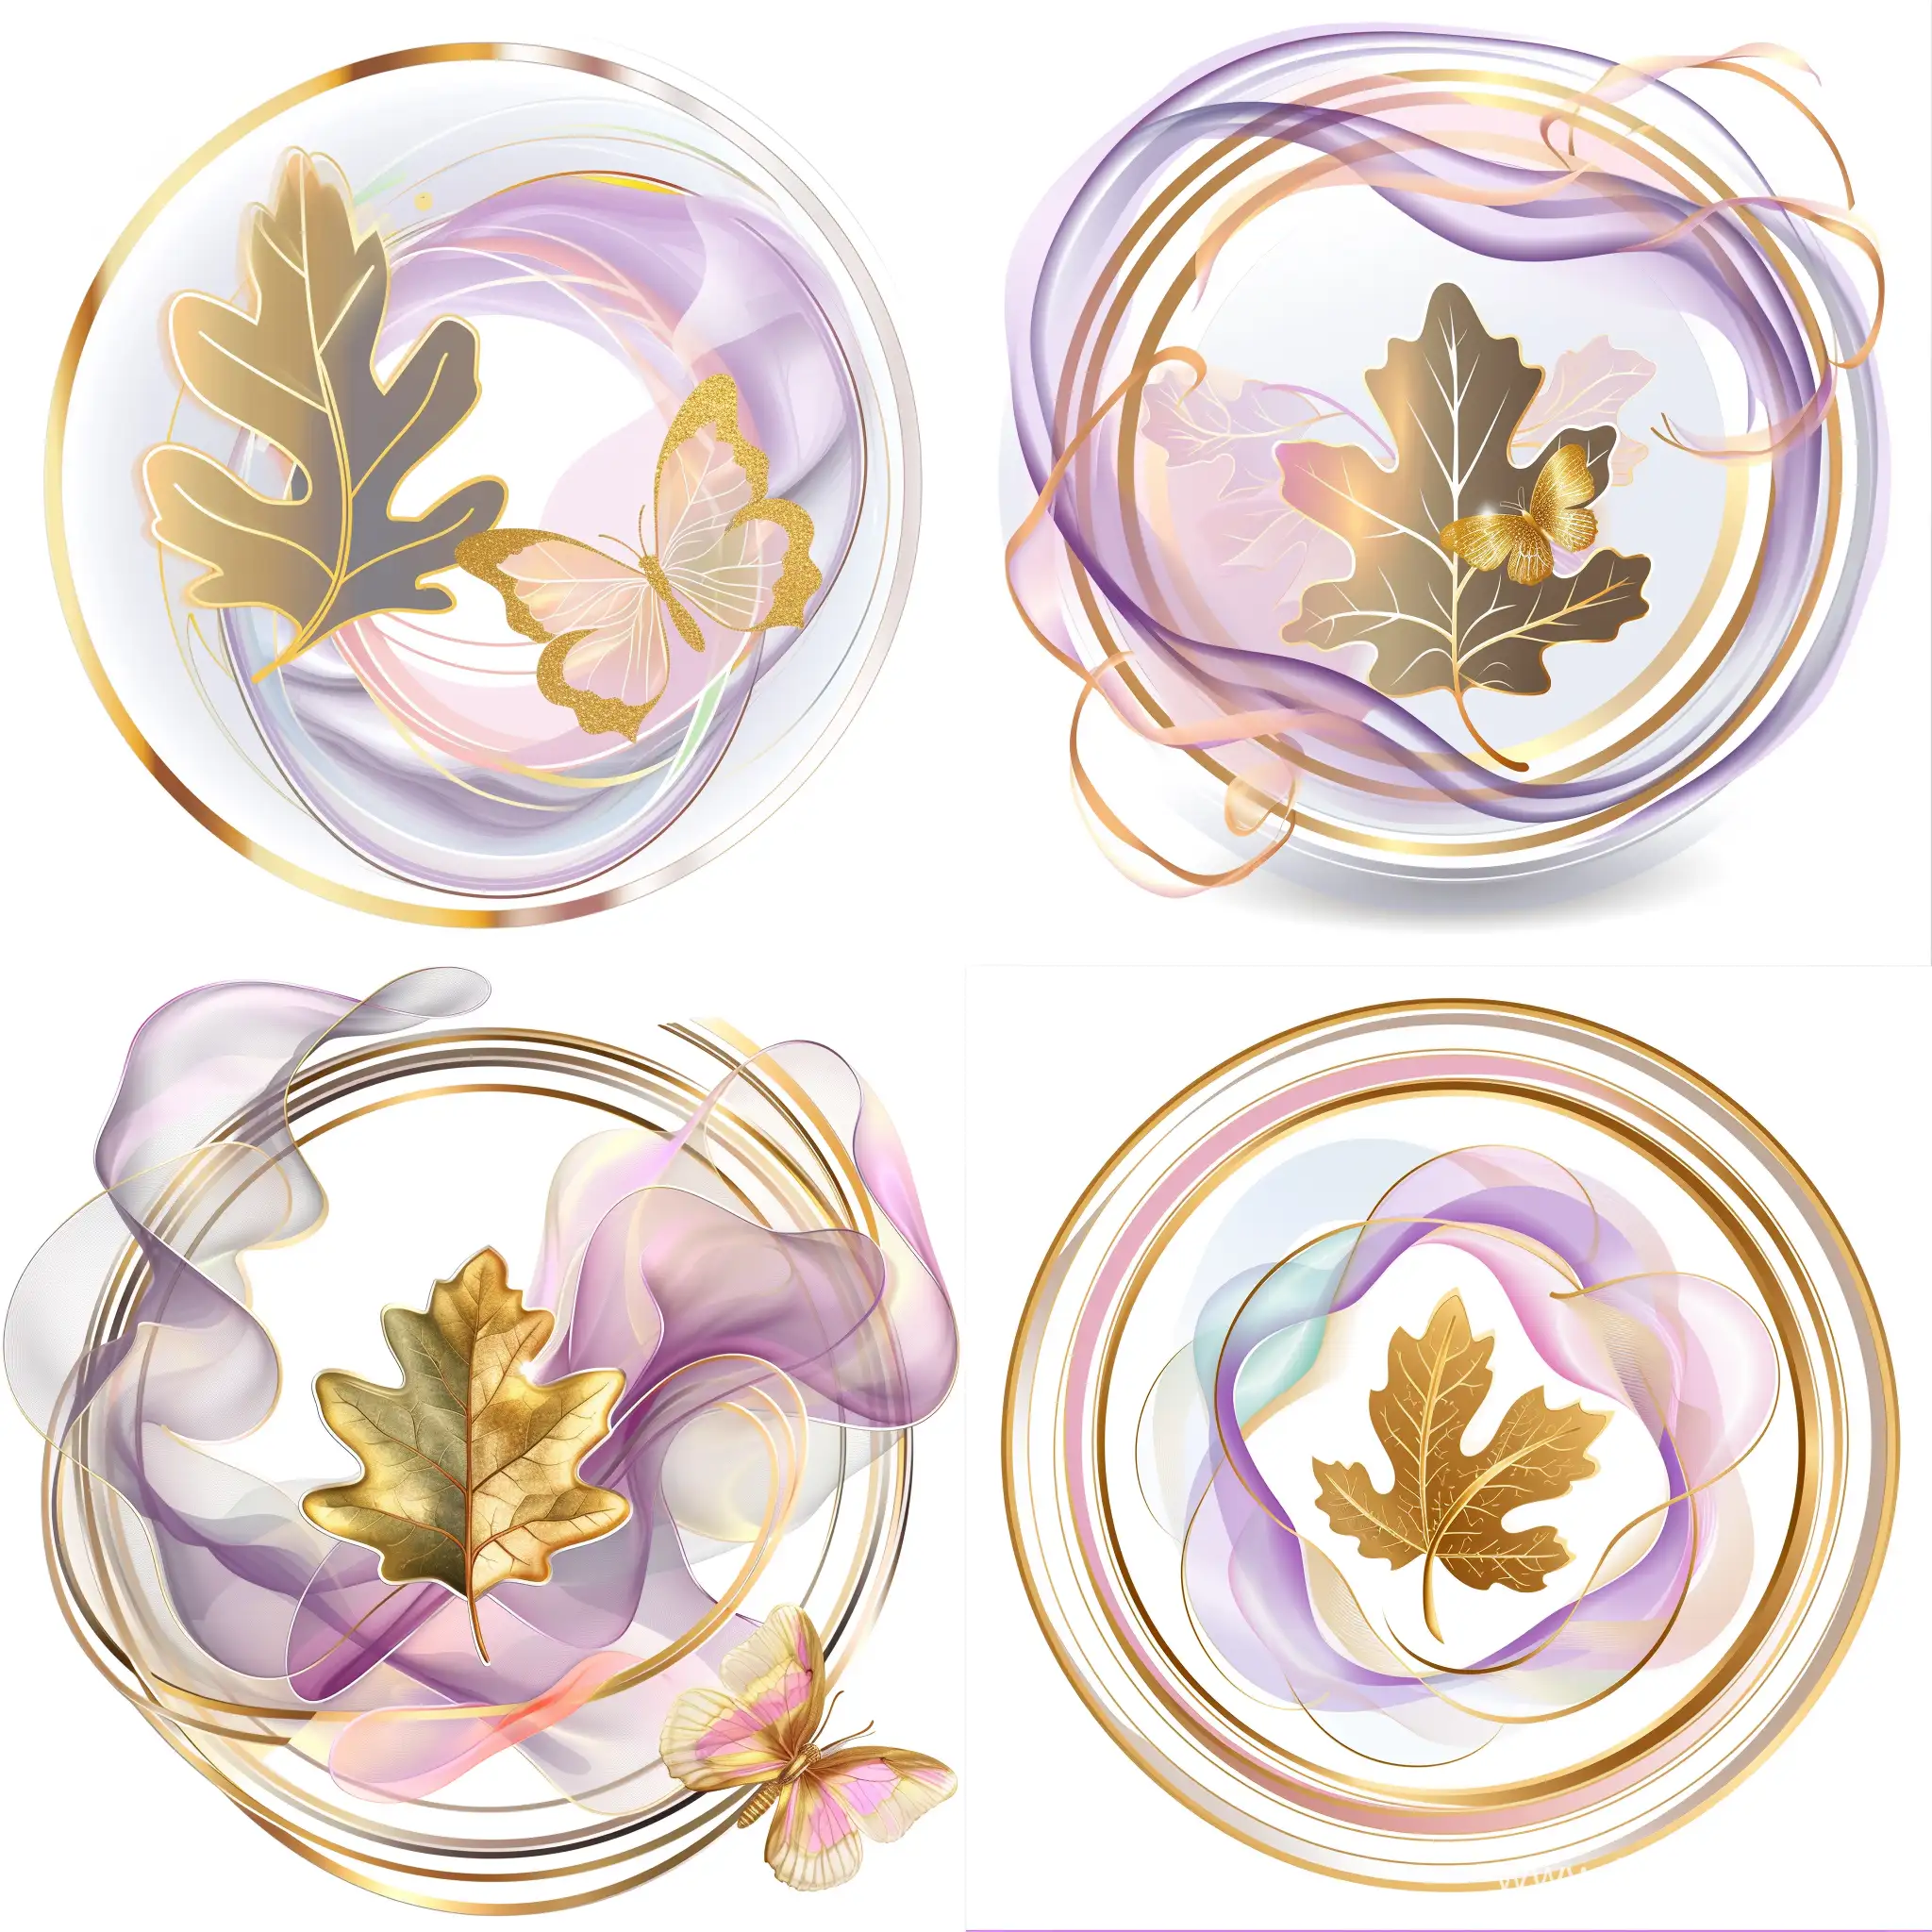 логотип круглый в прозрачном кольце, внутри прозрачные и полупрозрачные волновые мазки сиреневого, розового, золотого цвета, внутри  листик дуба и бабочка золотая с прозрачными сиреневыми крылышками